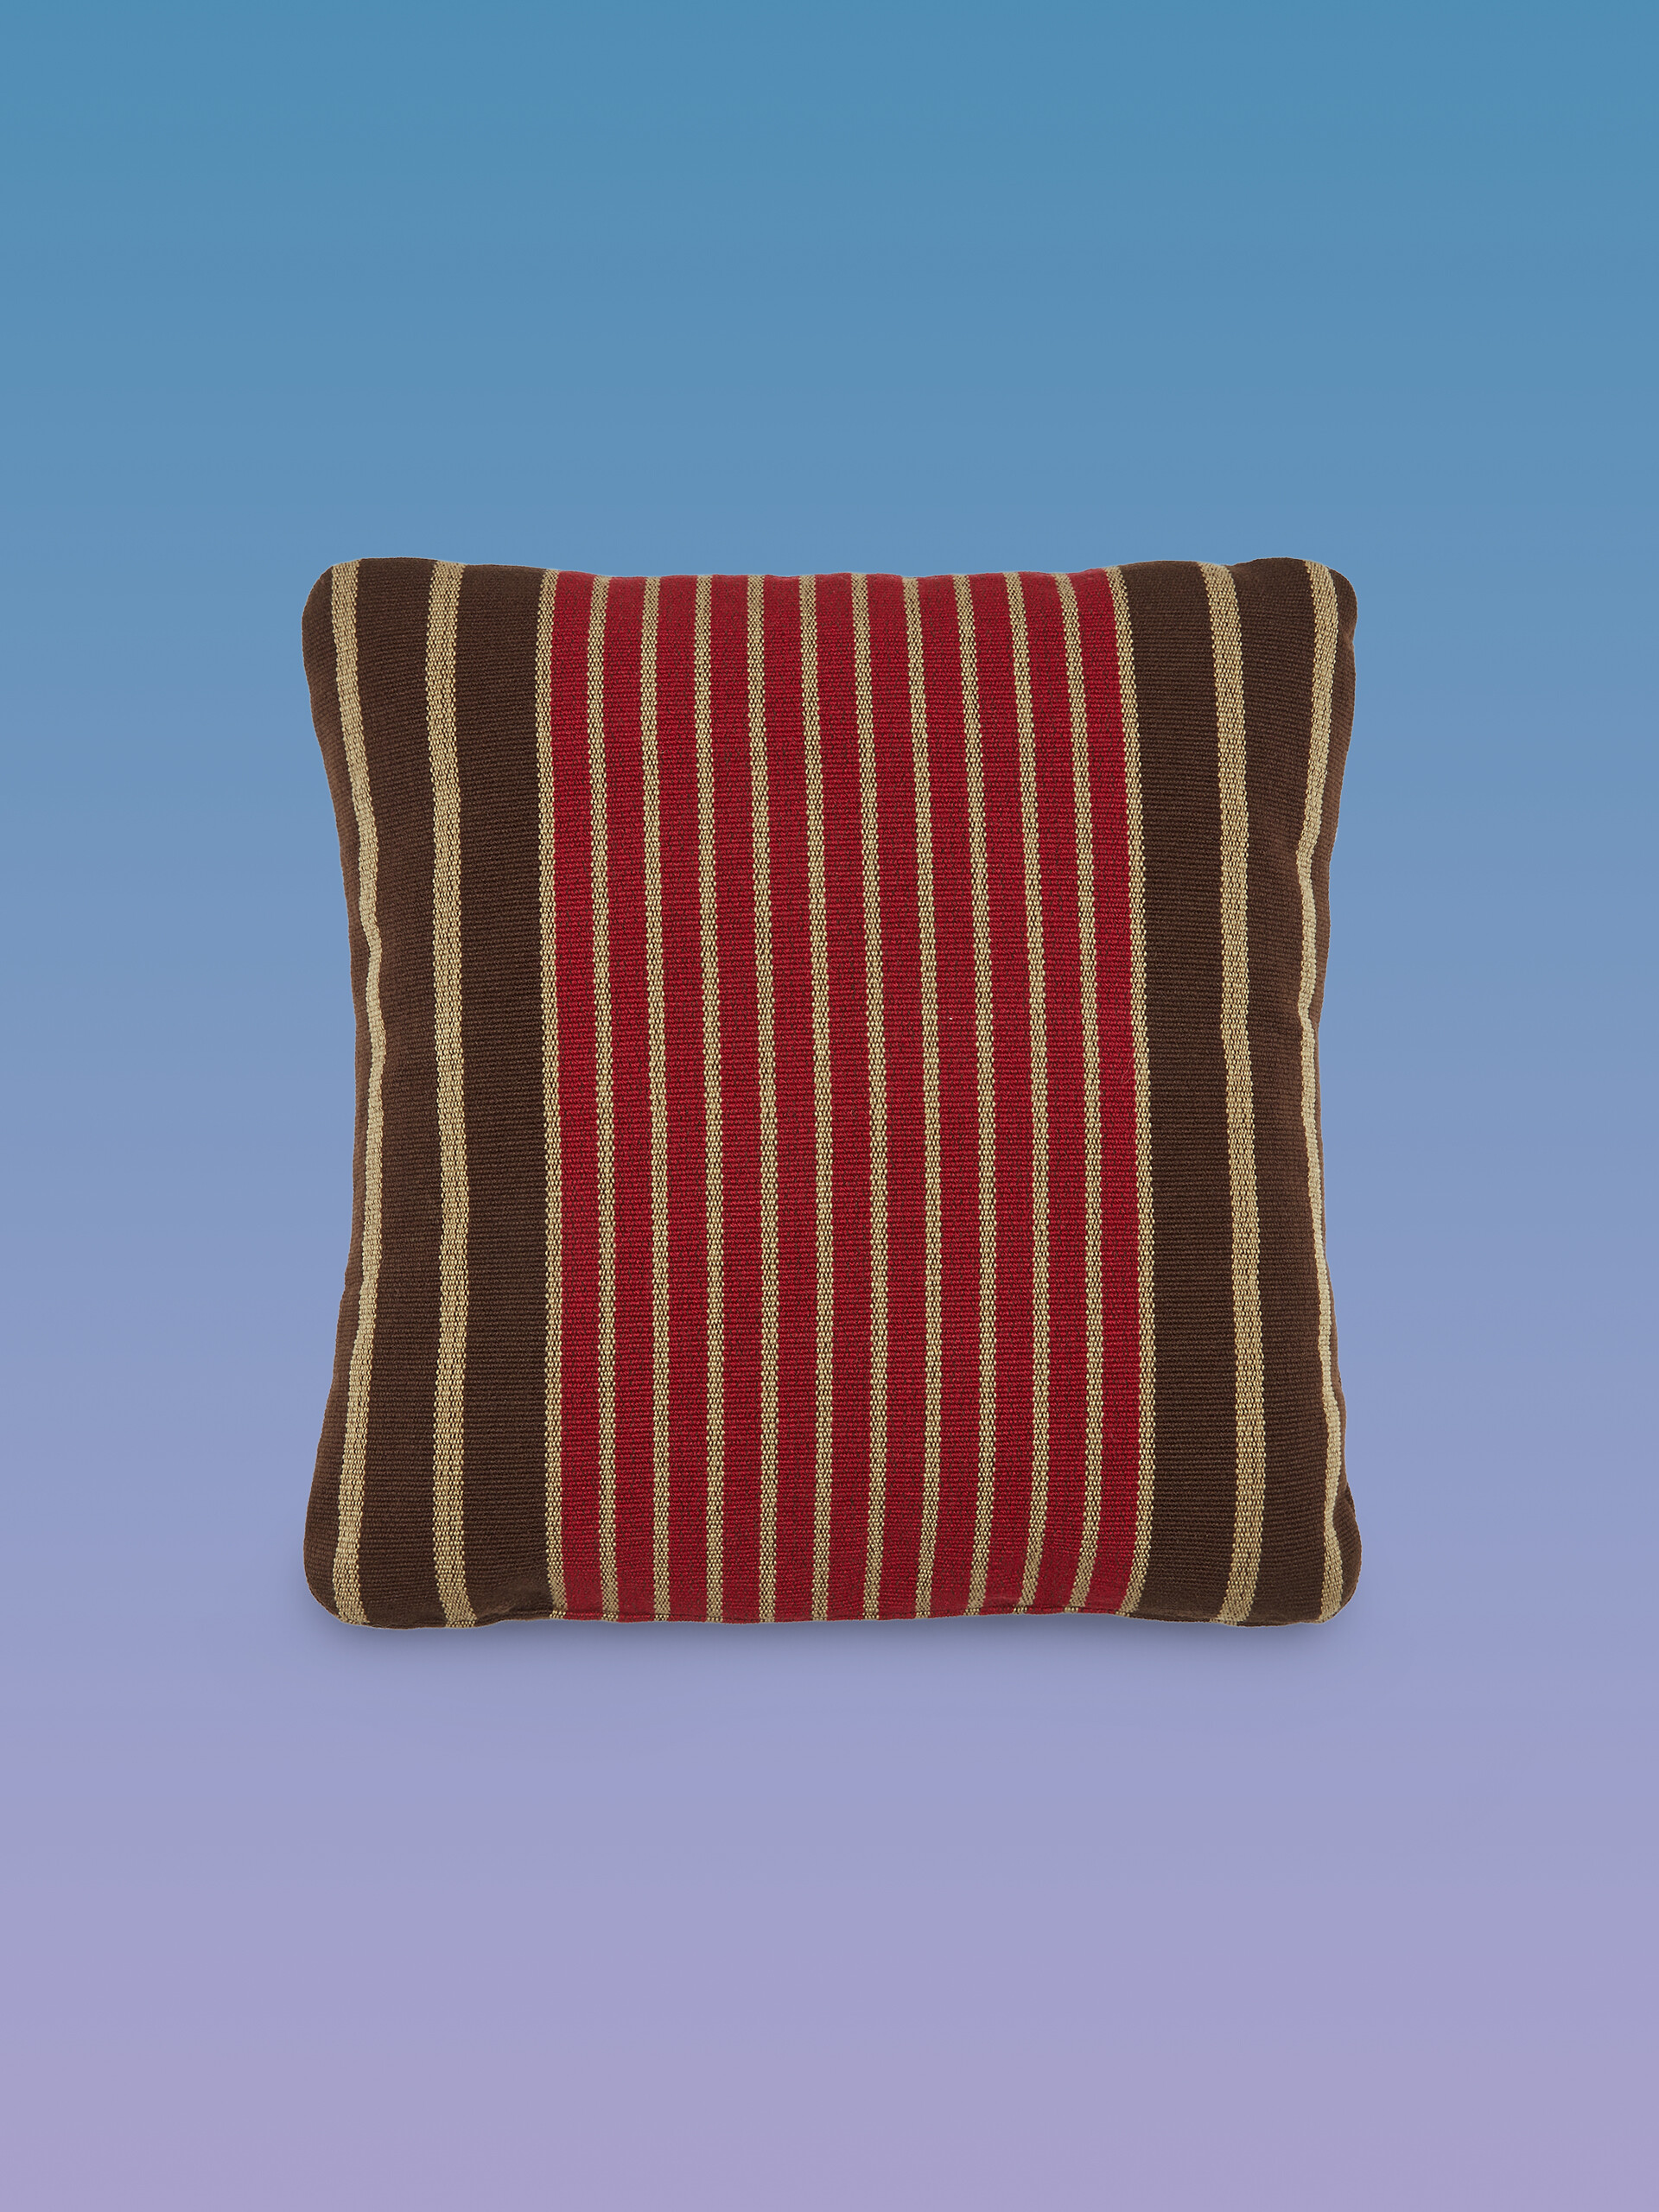 MARNI MARKET square cushion in multicolor black fabric - Furniture - Image 1